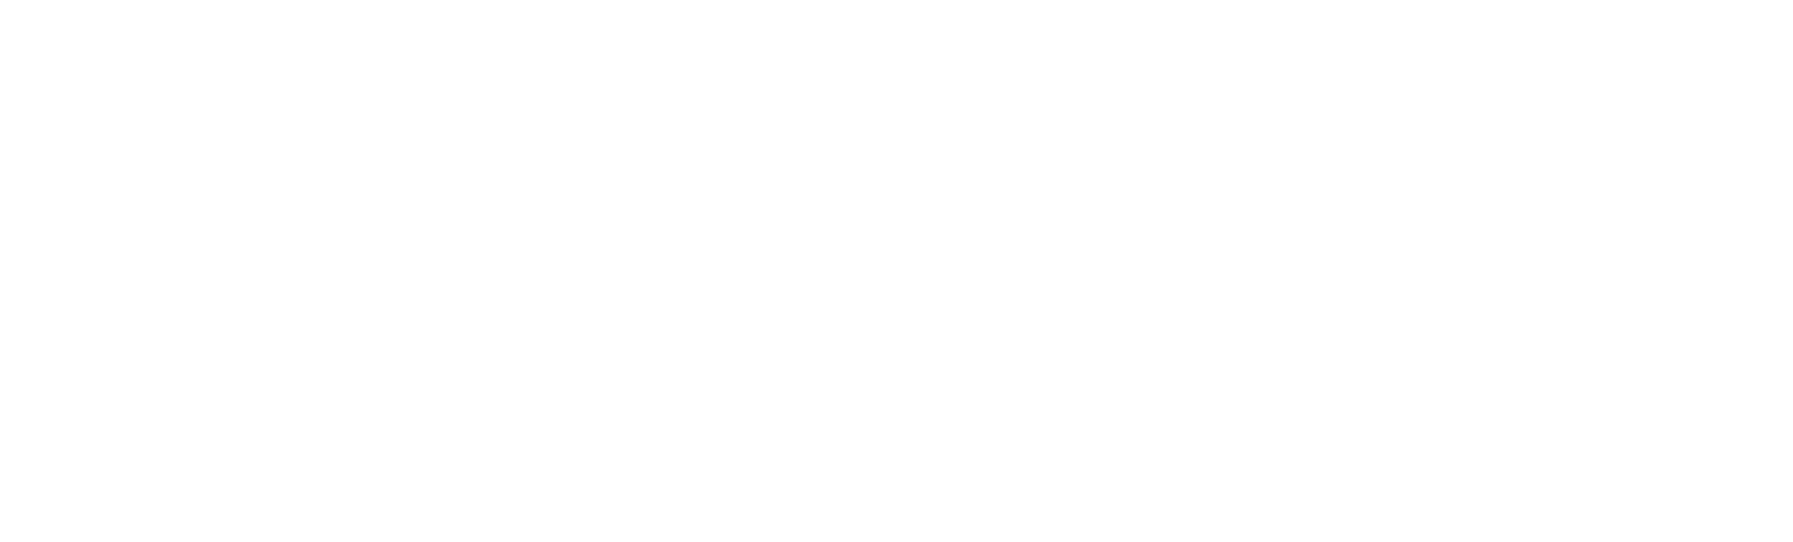 Gatos Silver logo grand pour les fonds sombres (PNG transparent)